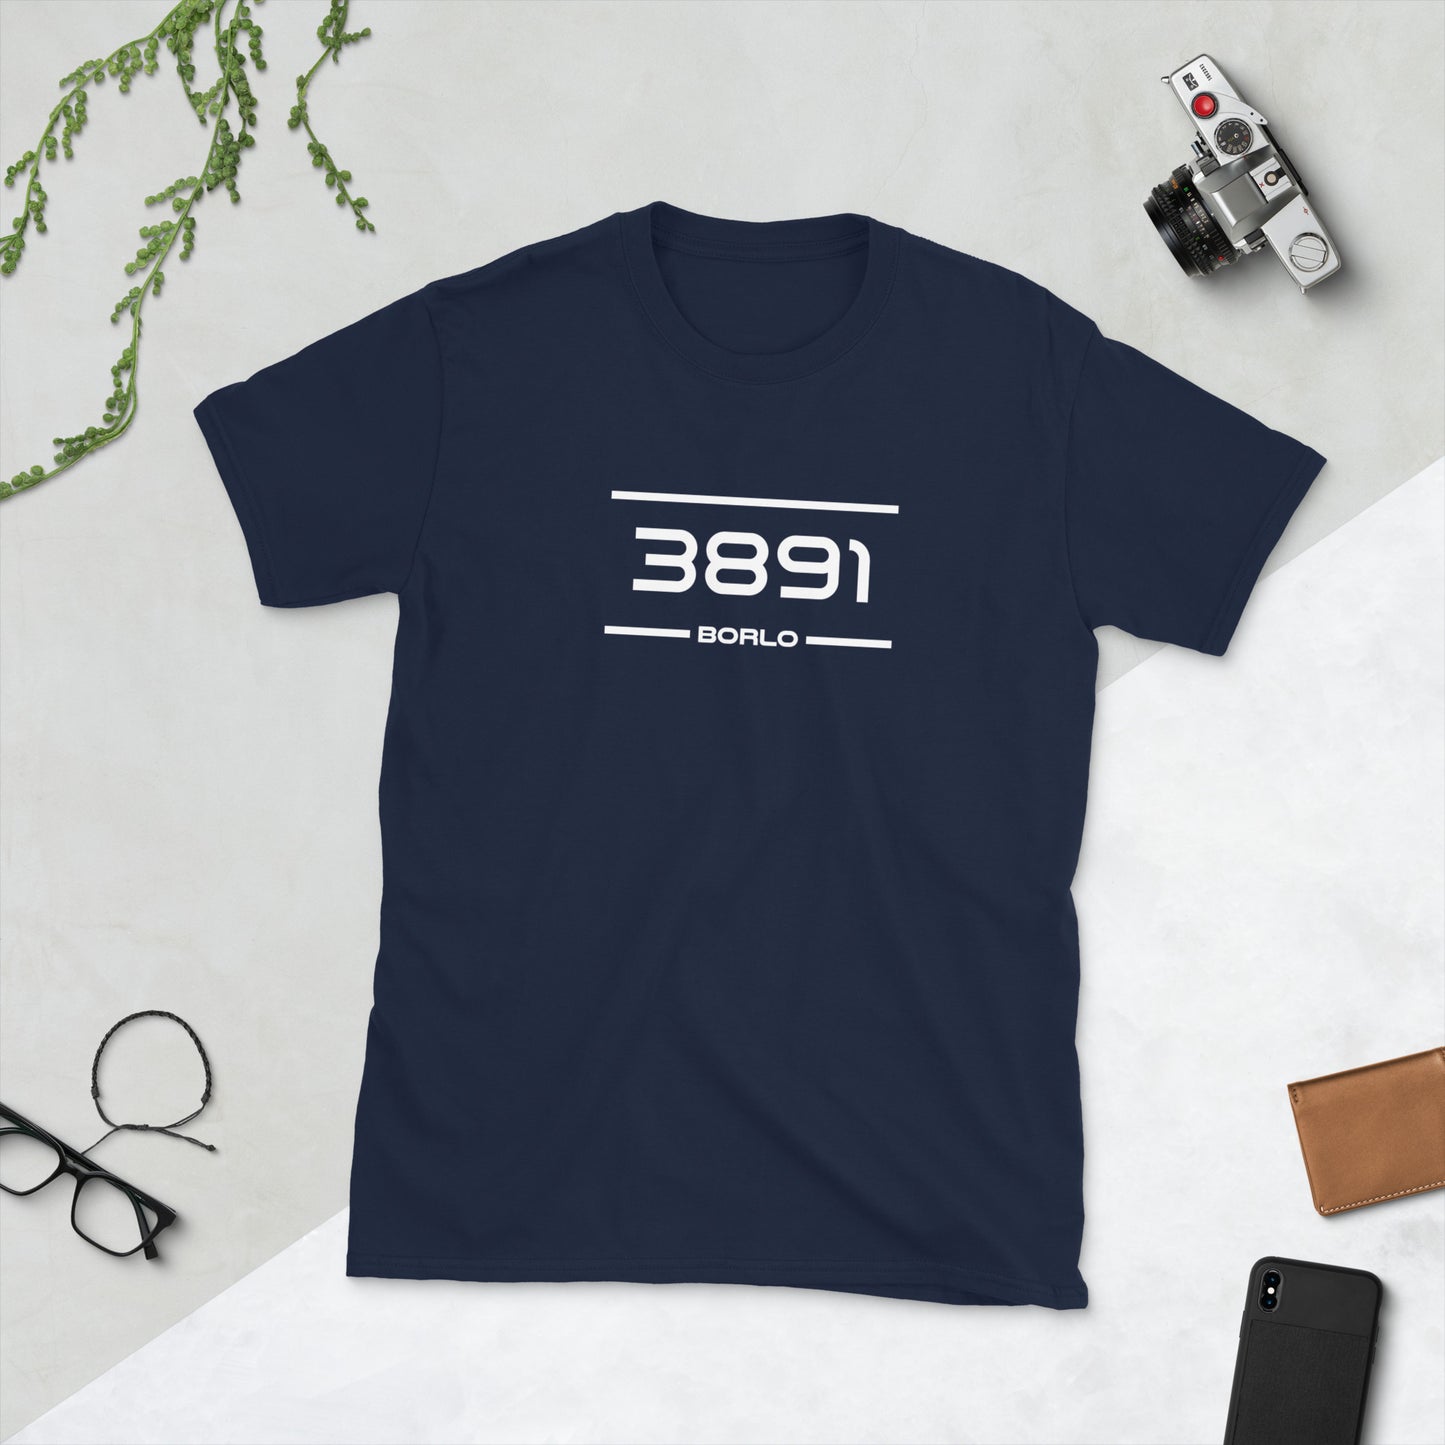 Tshirt - 3891 - Borlo